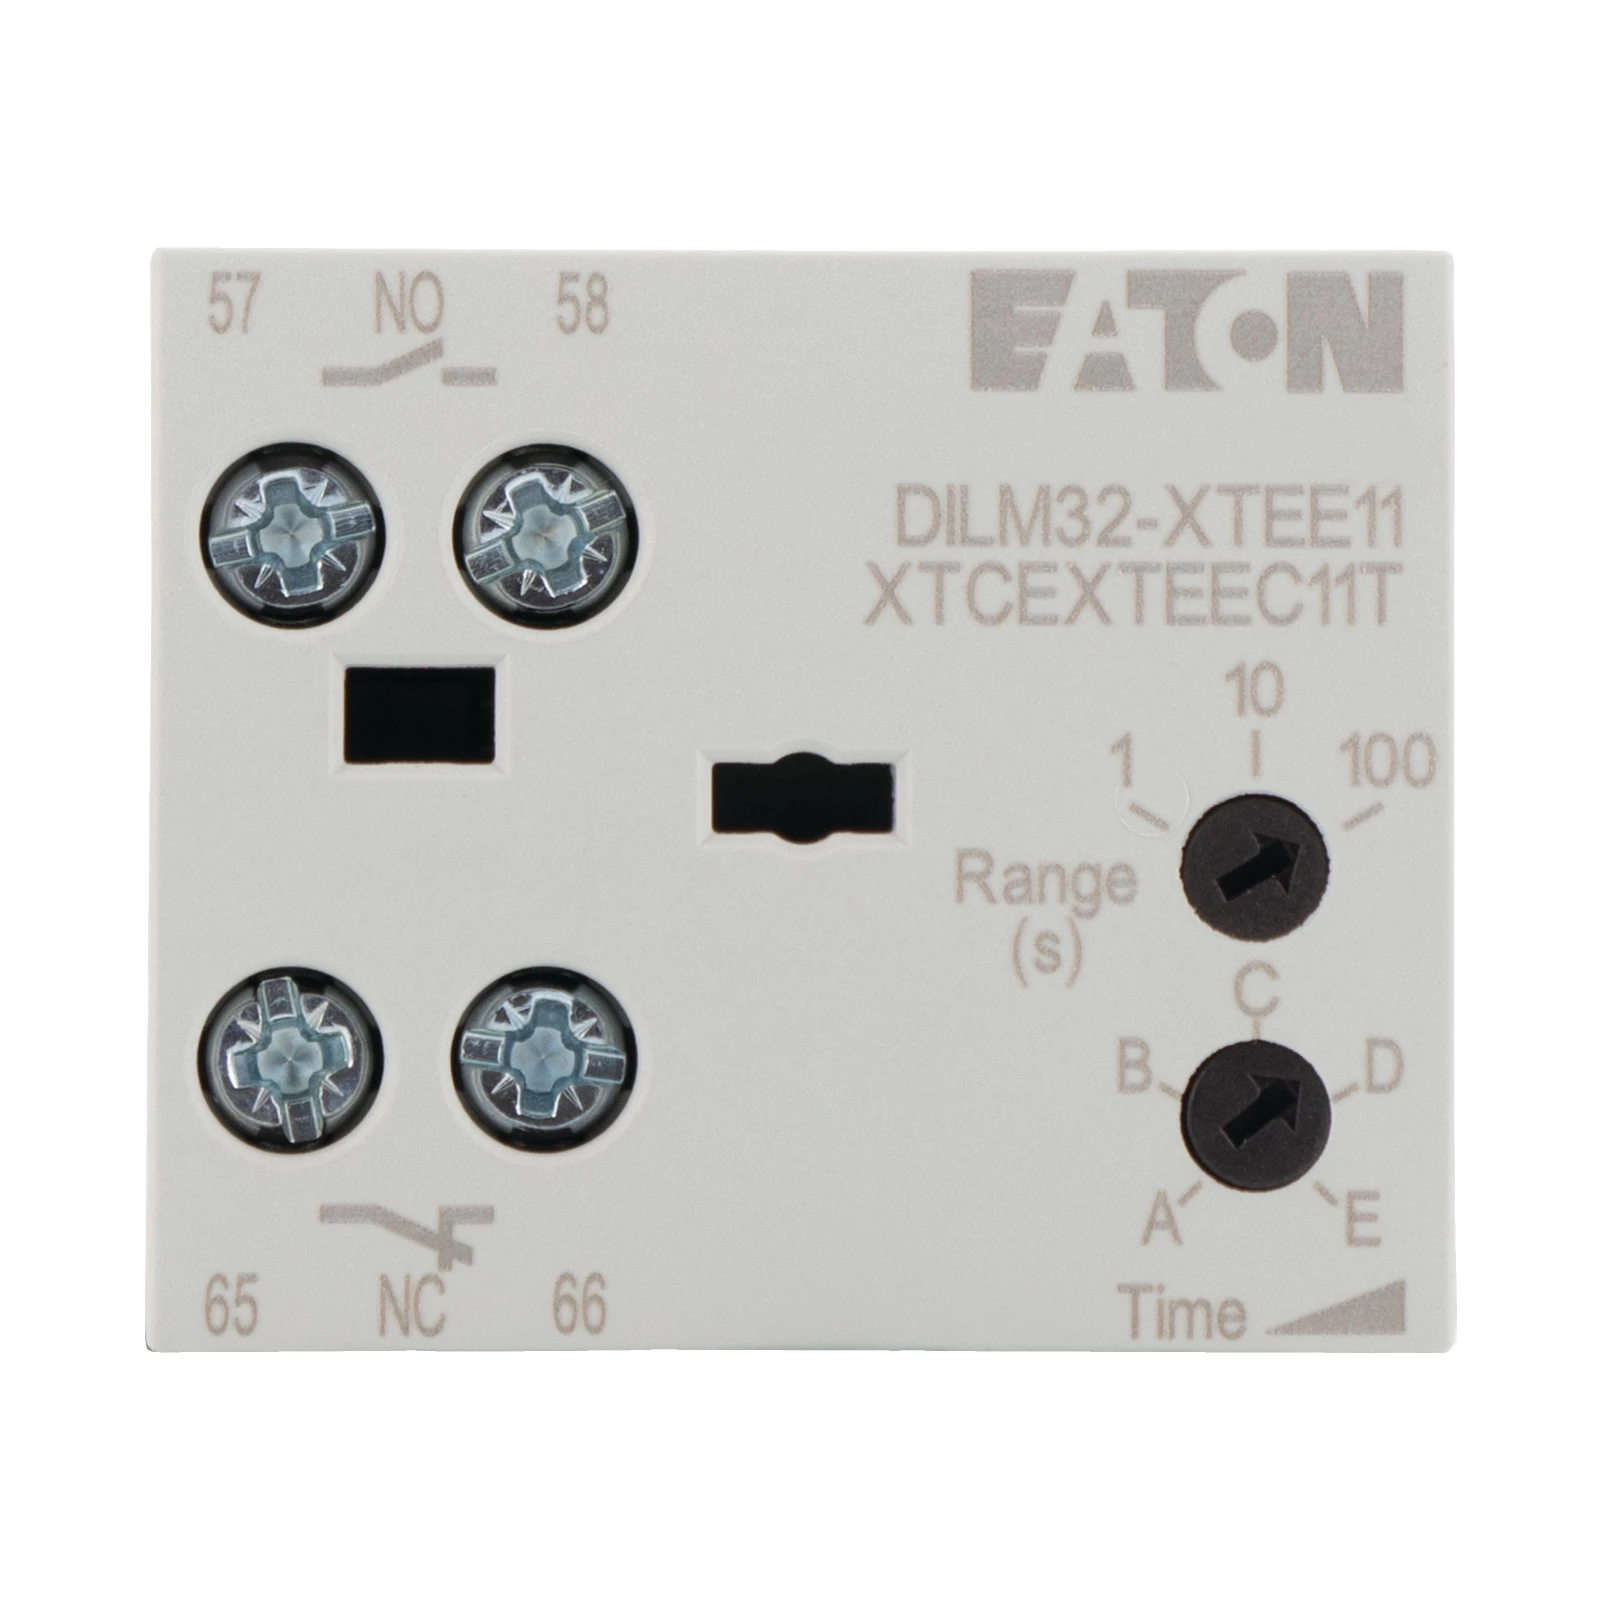 1034144 - Eaton DILM32-XTEE11(RA24)